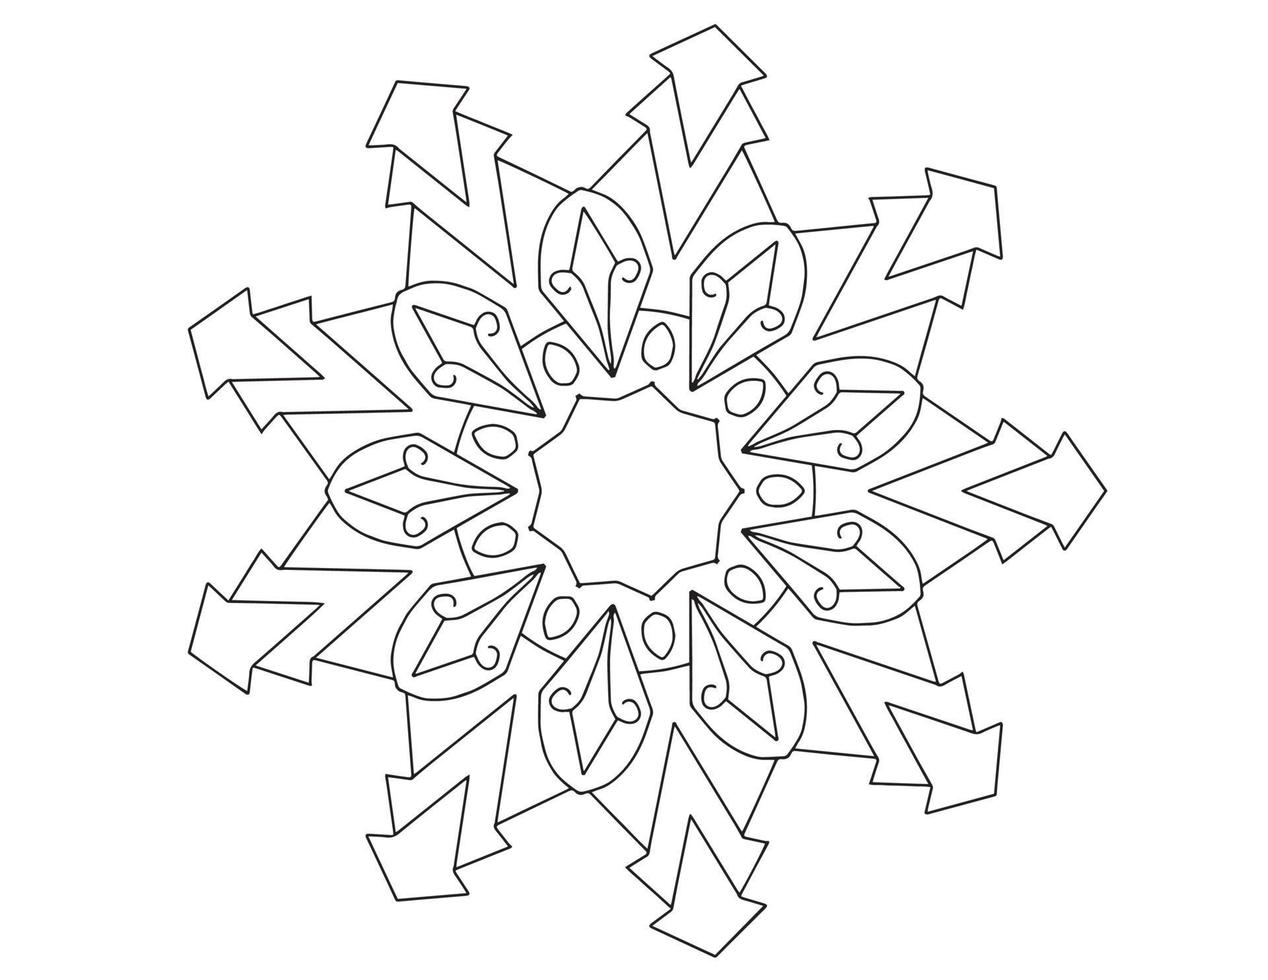 mandala in bianco e nero, tatuaggio, pagina da colorare, cerchio, ornamenti, vettore